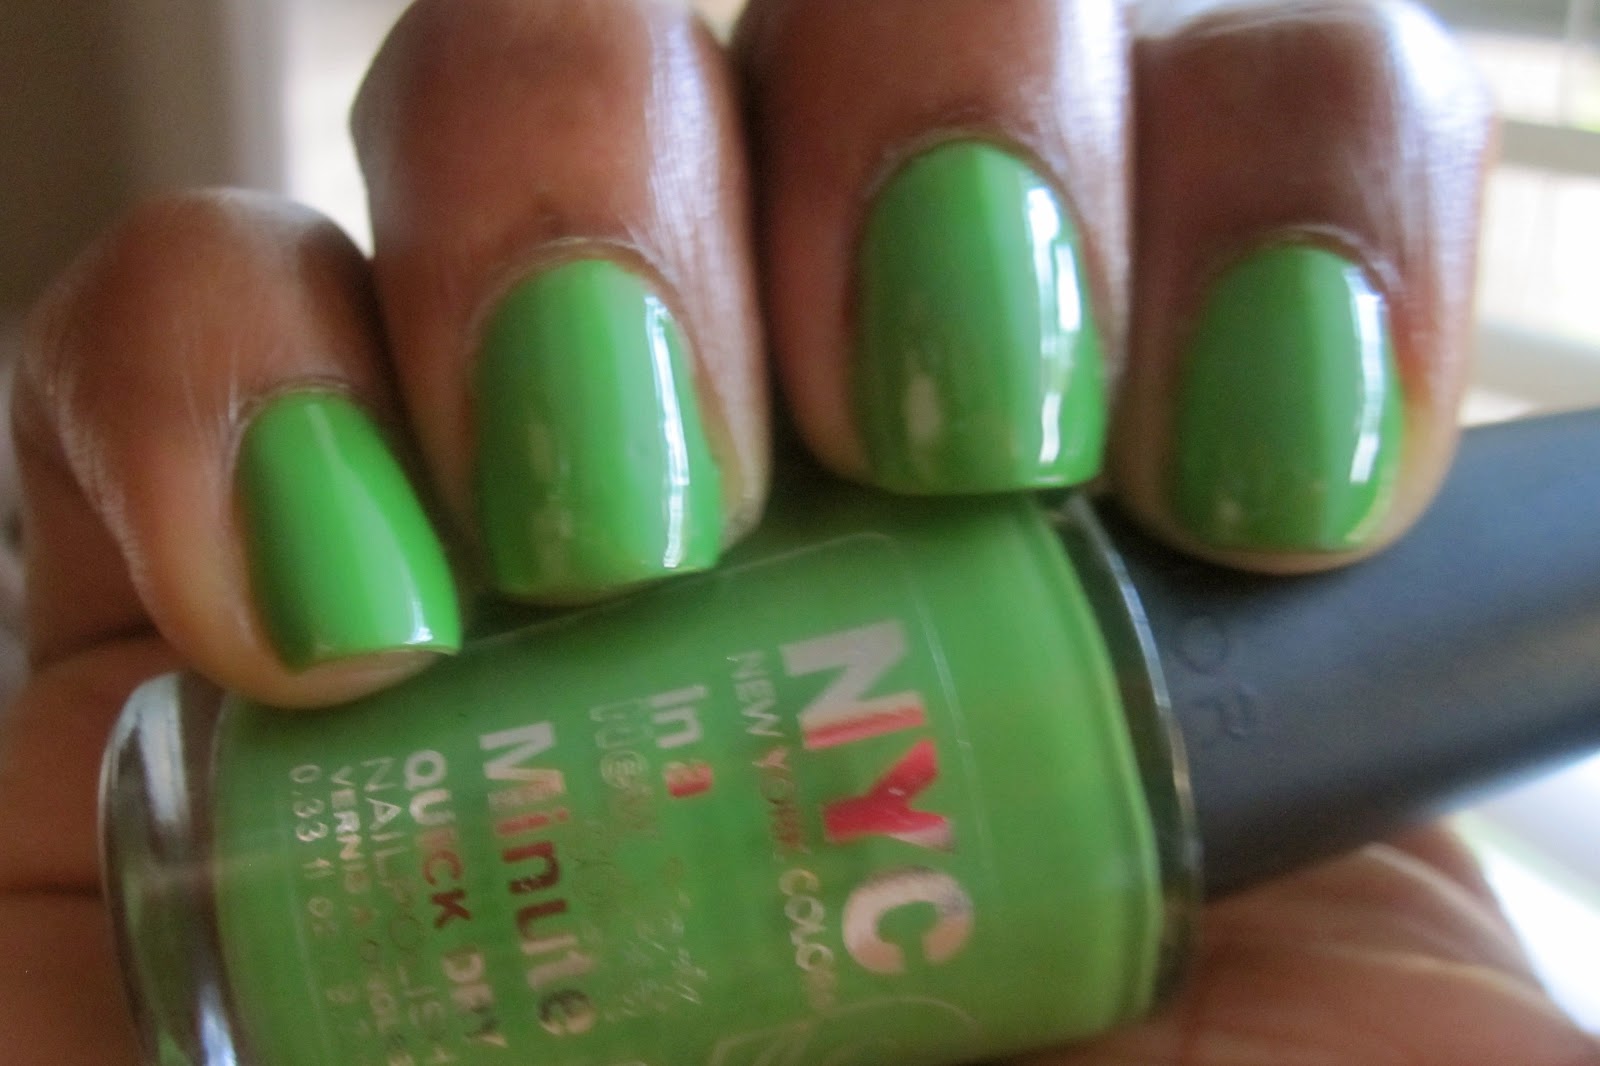 Highlighter Green Nail Polish - wide 10